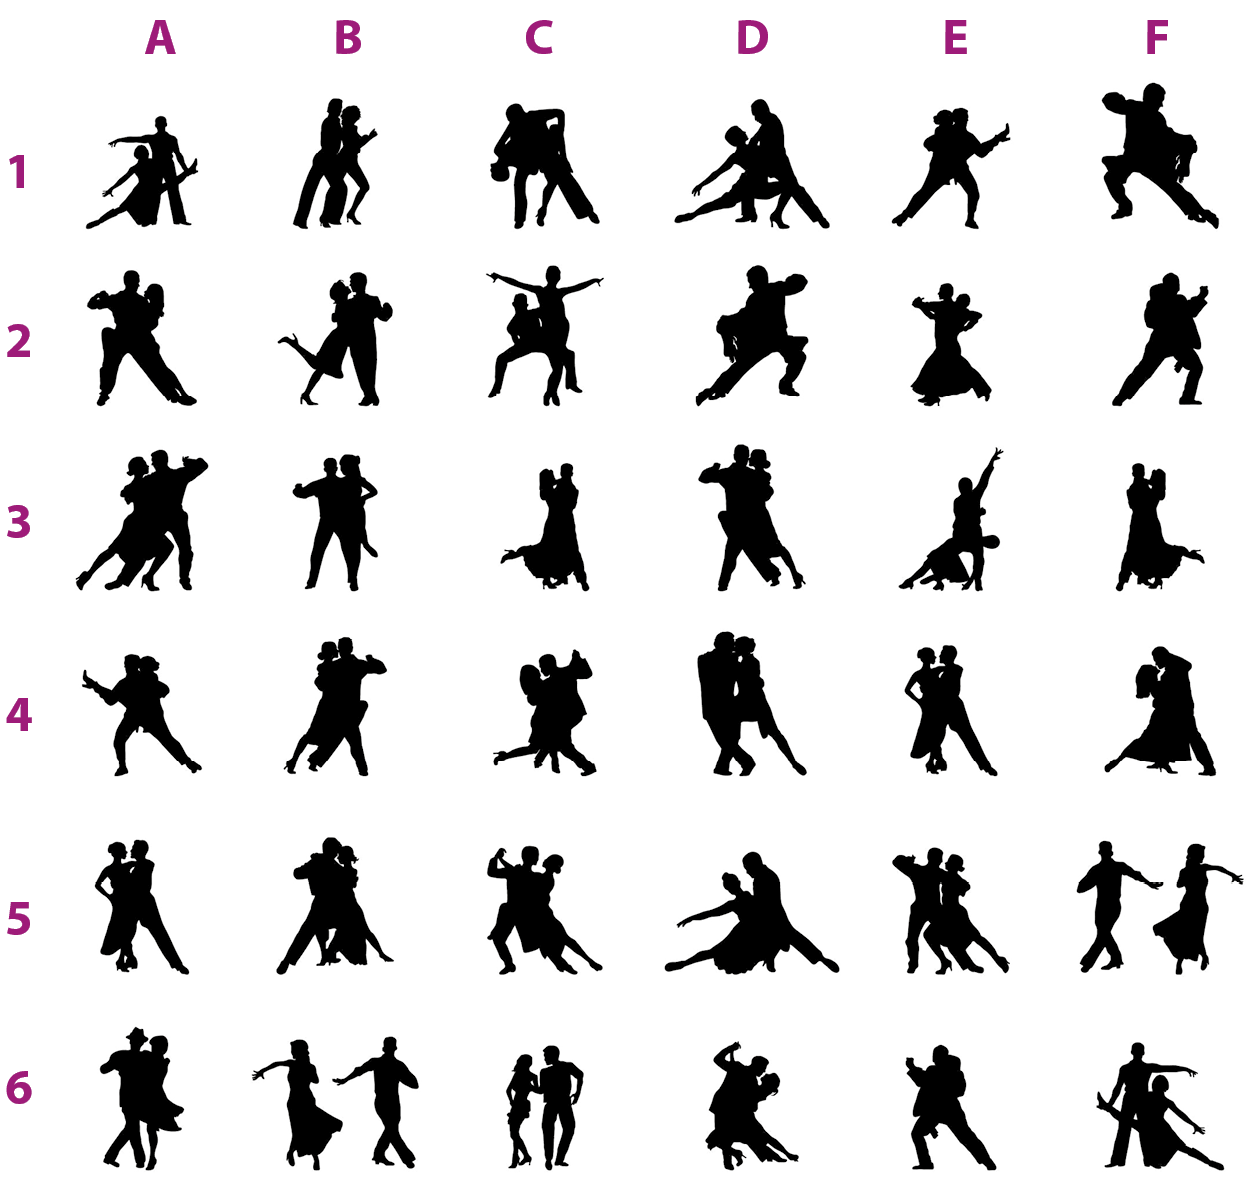 Esquema com ilustrações. Trinta e seis pequenas ilustrações mostram um casal dançando em diferentes poses, representados apenas pela silhueta deles em preto. As imagens estão dispostas em linhas e colunas. São seis linhas, cada linha indicada por um número (1, 2, 3, 4, 5, 6), e seis colunas, cada coluna indicada por uma letra (A, B, C, E, D, E, F).